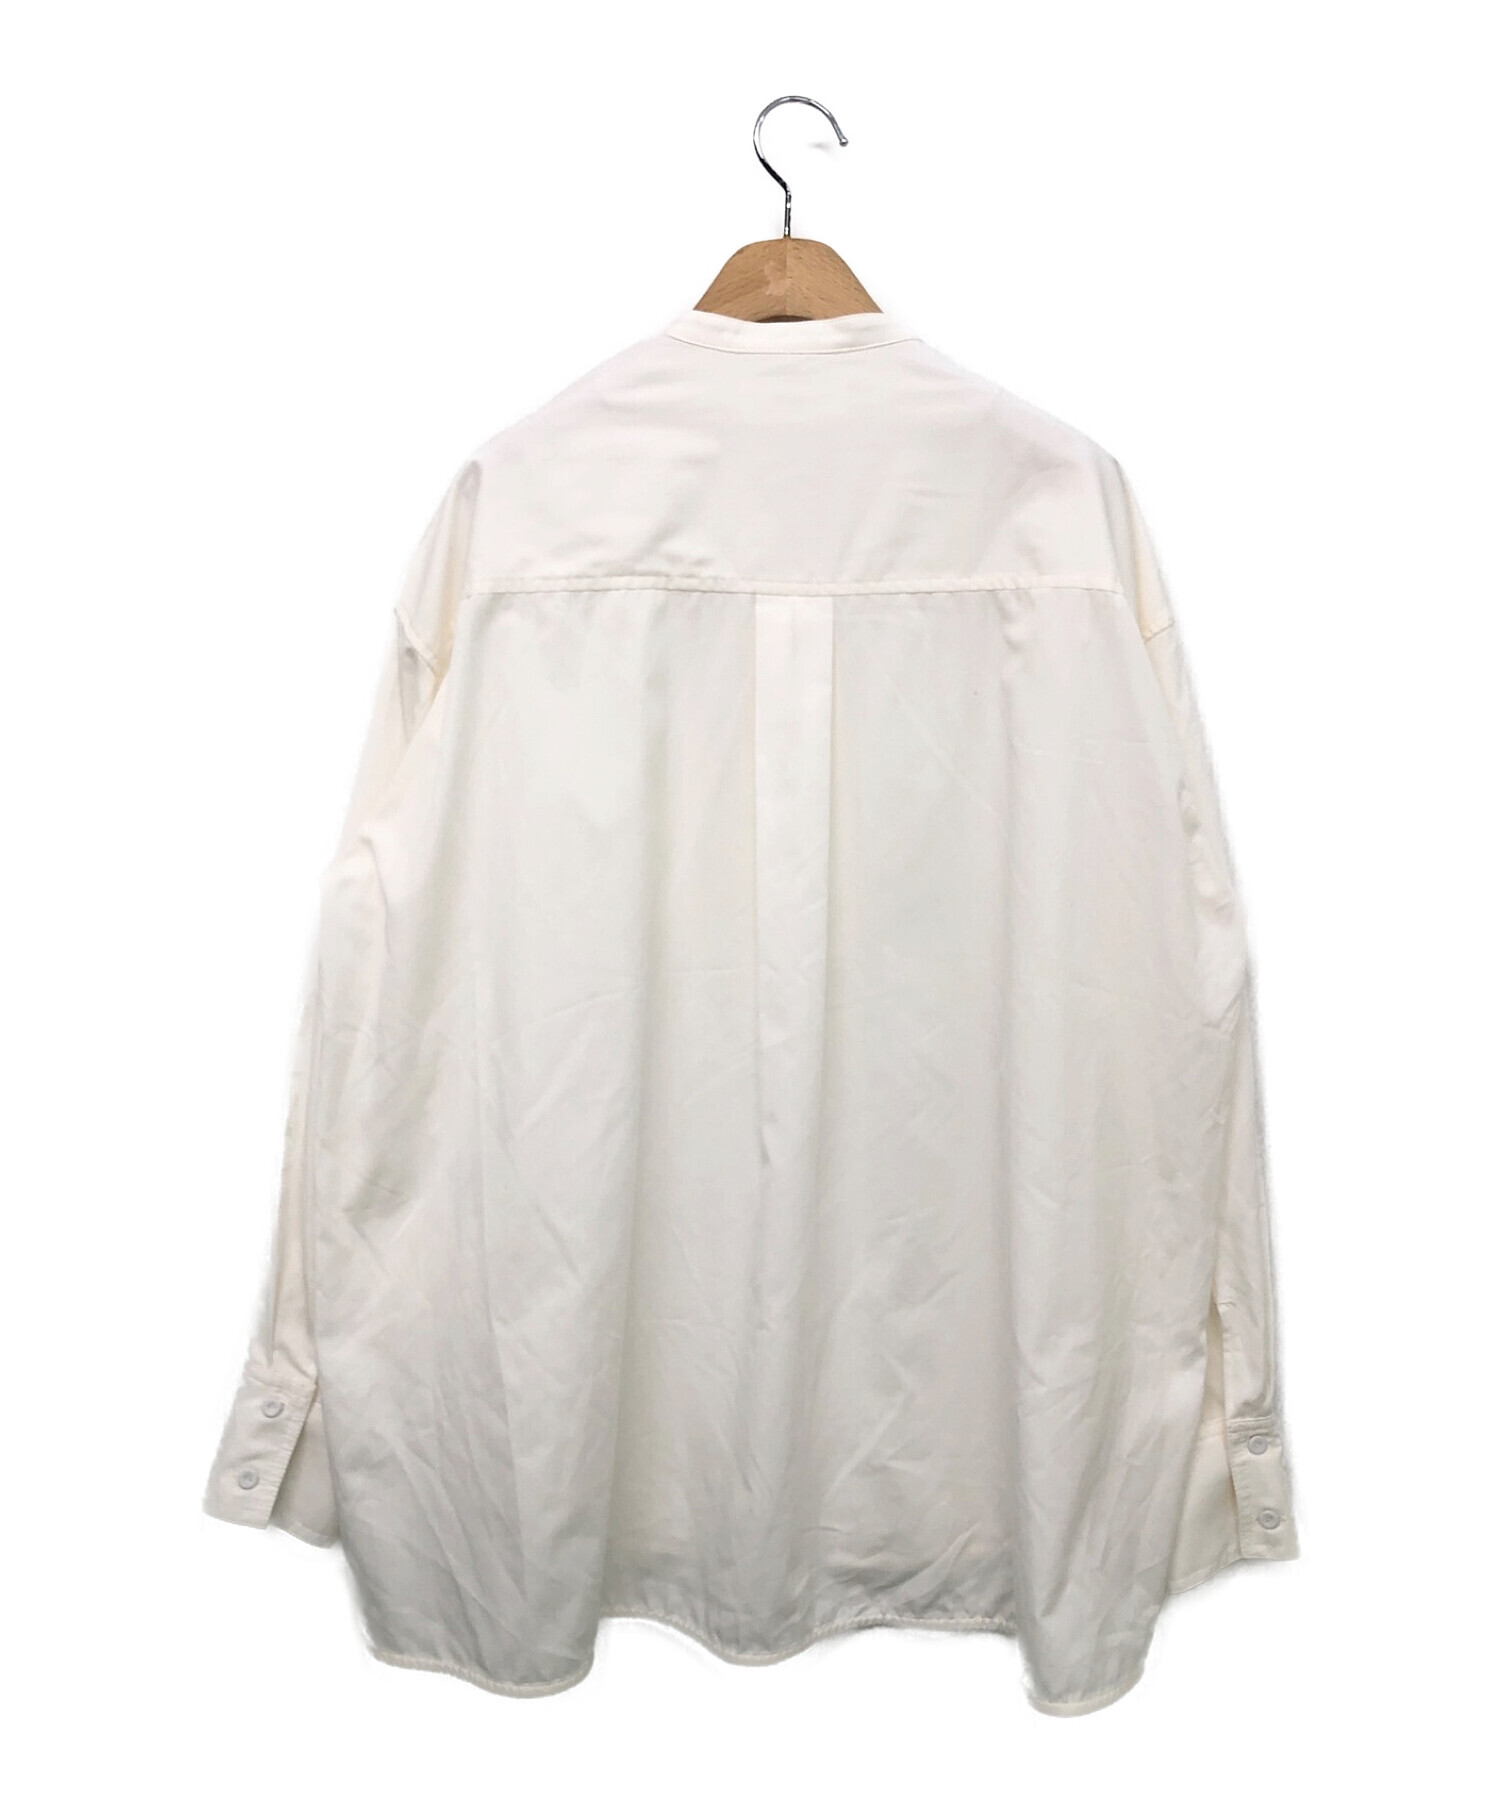 machatt (マチャット) タキシードドレスシャツ ホワイト サイズ:-